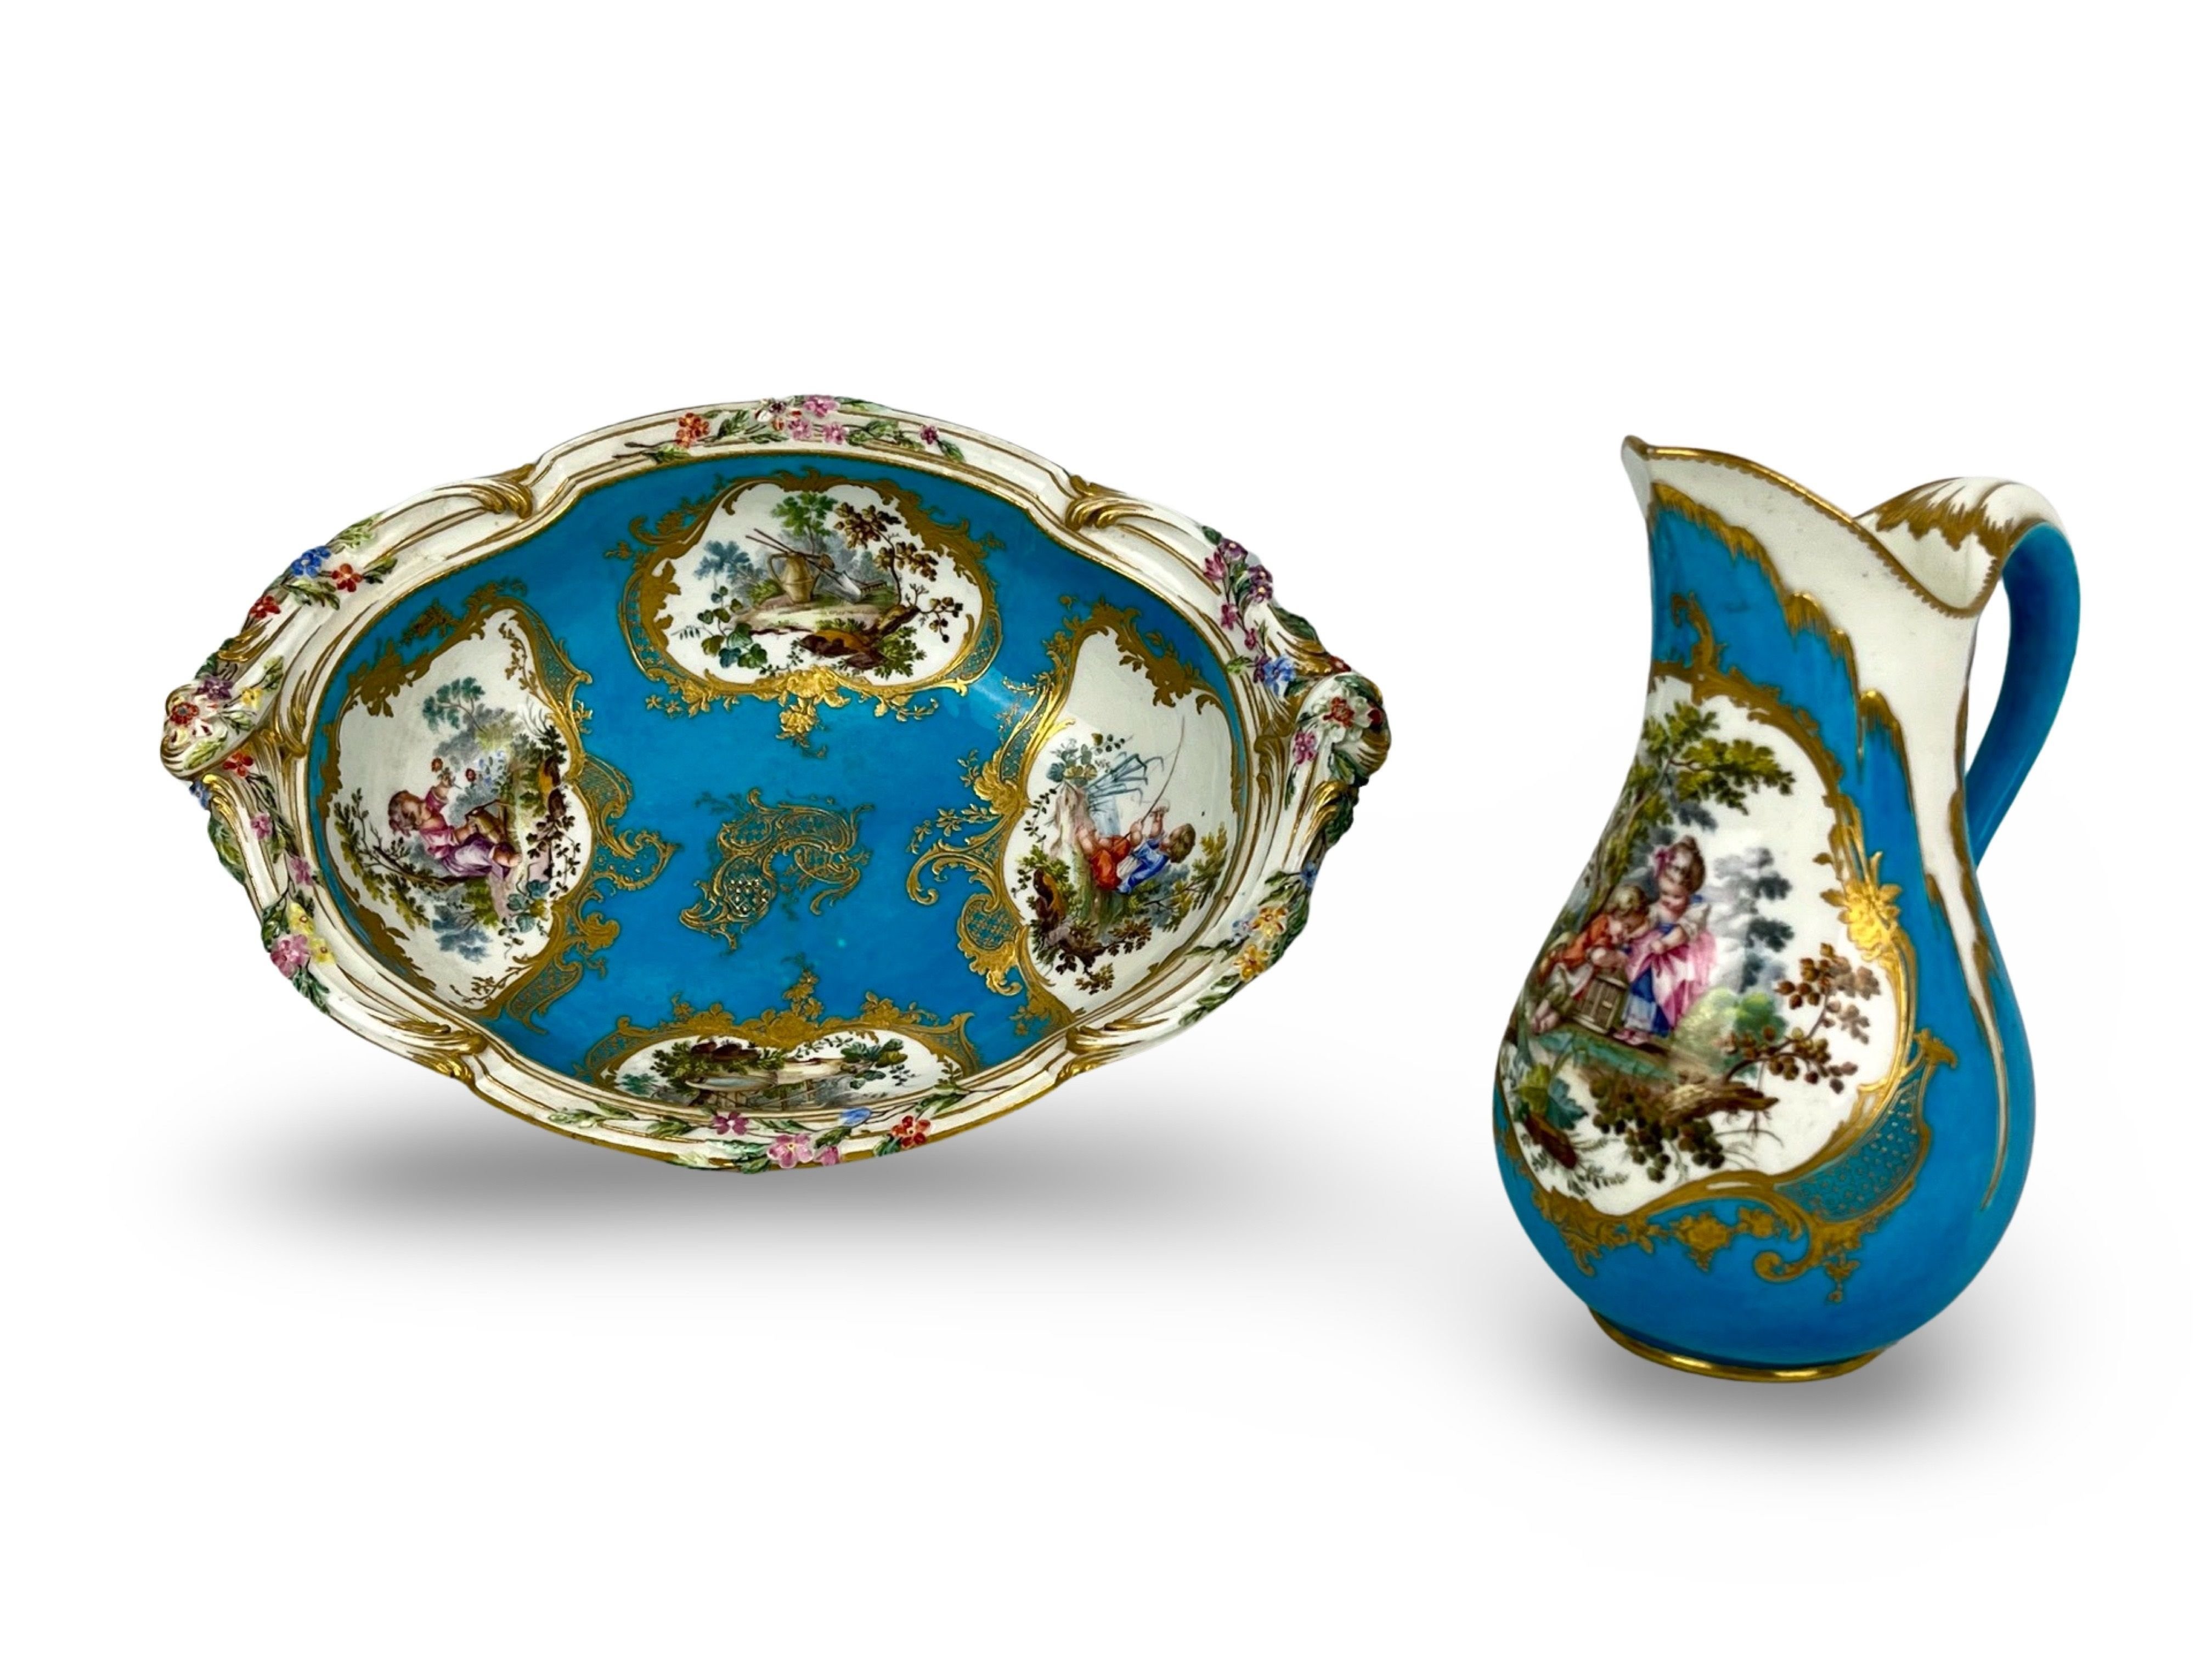 Ce vase - baptisé aiguière - et ce bassin avaient été offerts à un ancêtre du comte de Thoiry par Marie-Antoinette. Des pièces exceptionnelles en porcelaine de Sèvres, colorées d’un «bleu céleste» unique au monde. DR